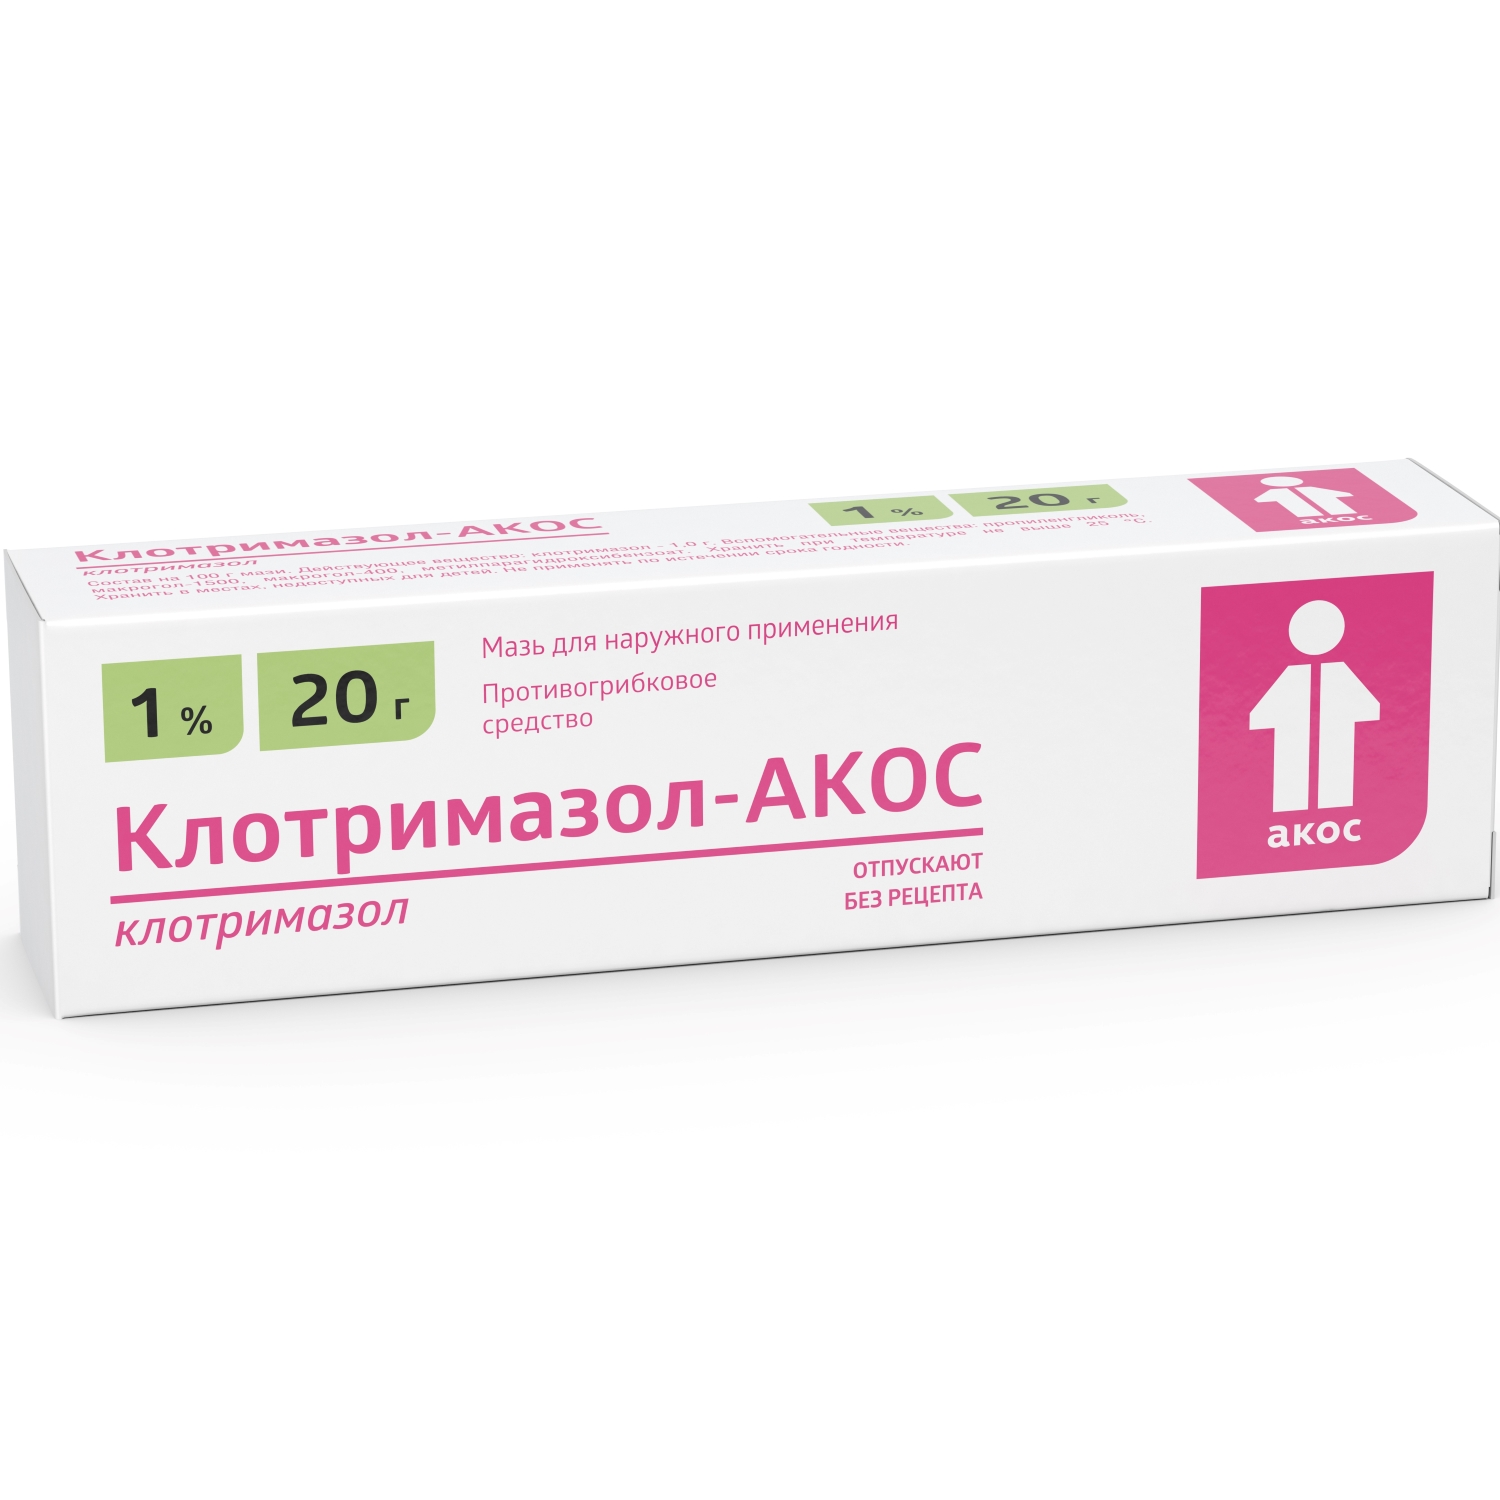 Клотримазол-АКОС мазь 1% 20г хондроитин акос мазь 5% 30г